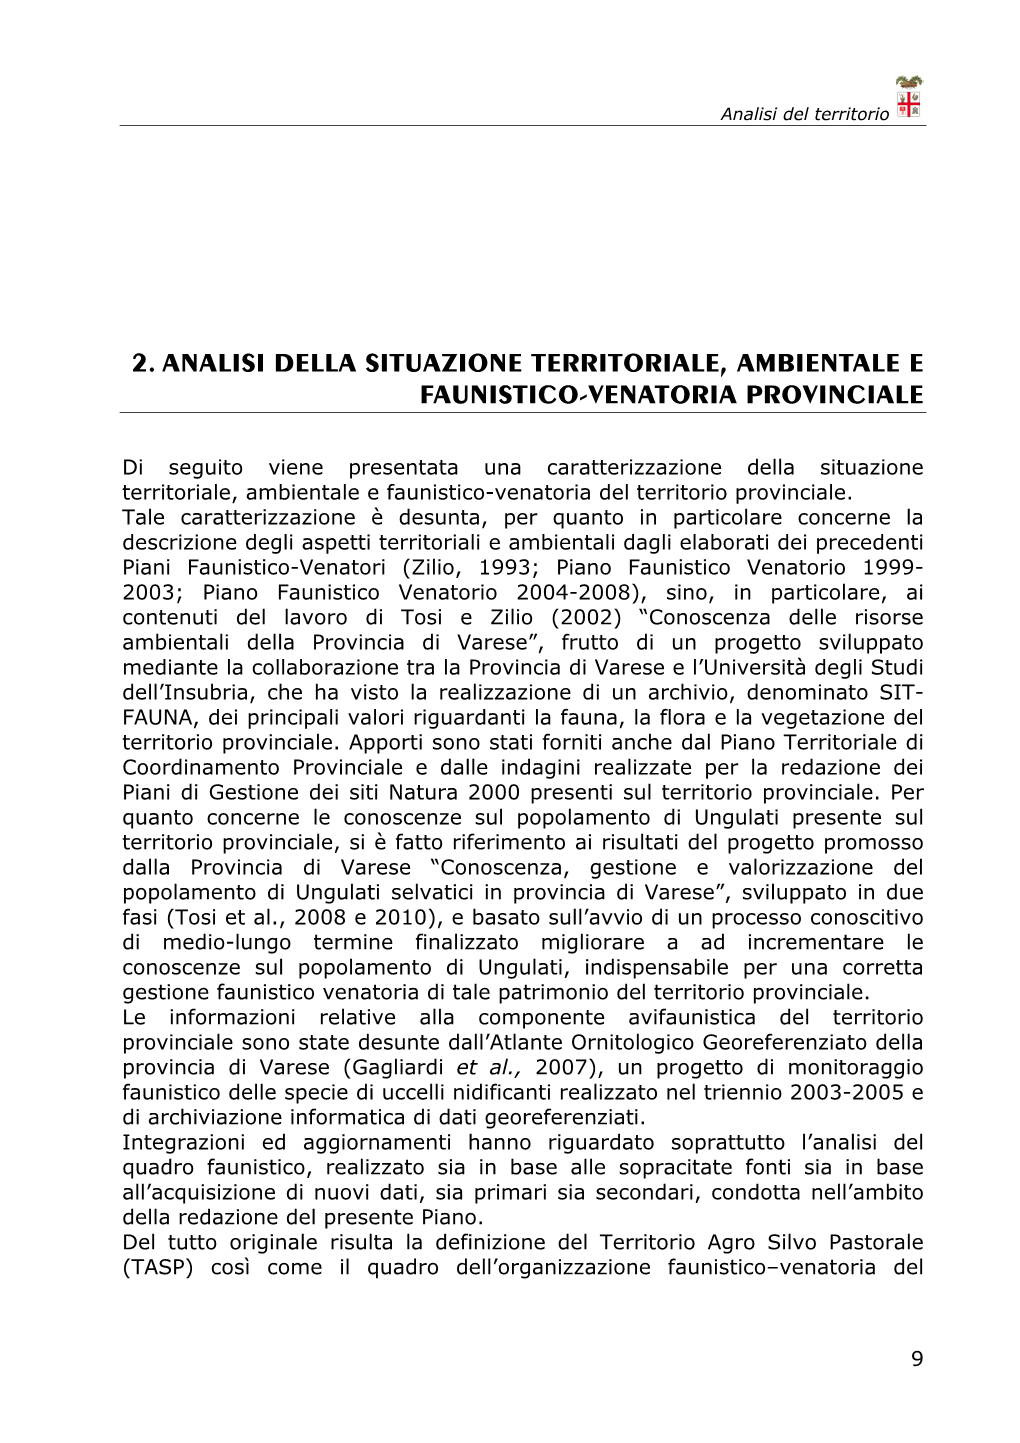 2. Analisi Della Situazione Territoriale, Ambientale E Faunistico-Venatoria Provinciale